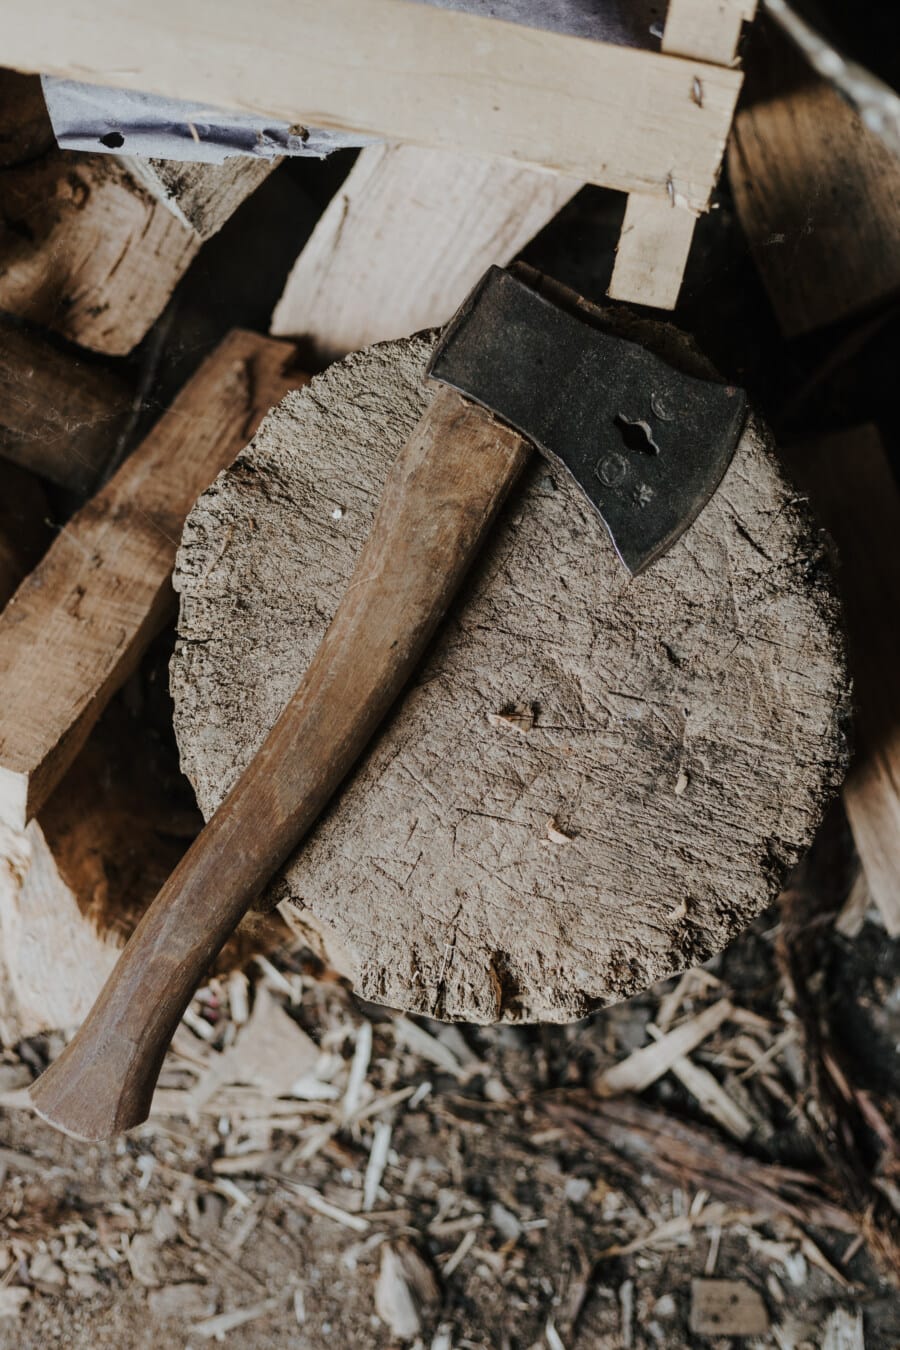 斧头, 铸铁, 手工具, 木柴, 工具, 木材, 刀, 锋利, 木屑, 铁